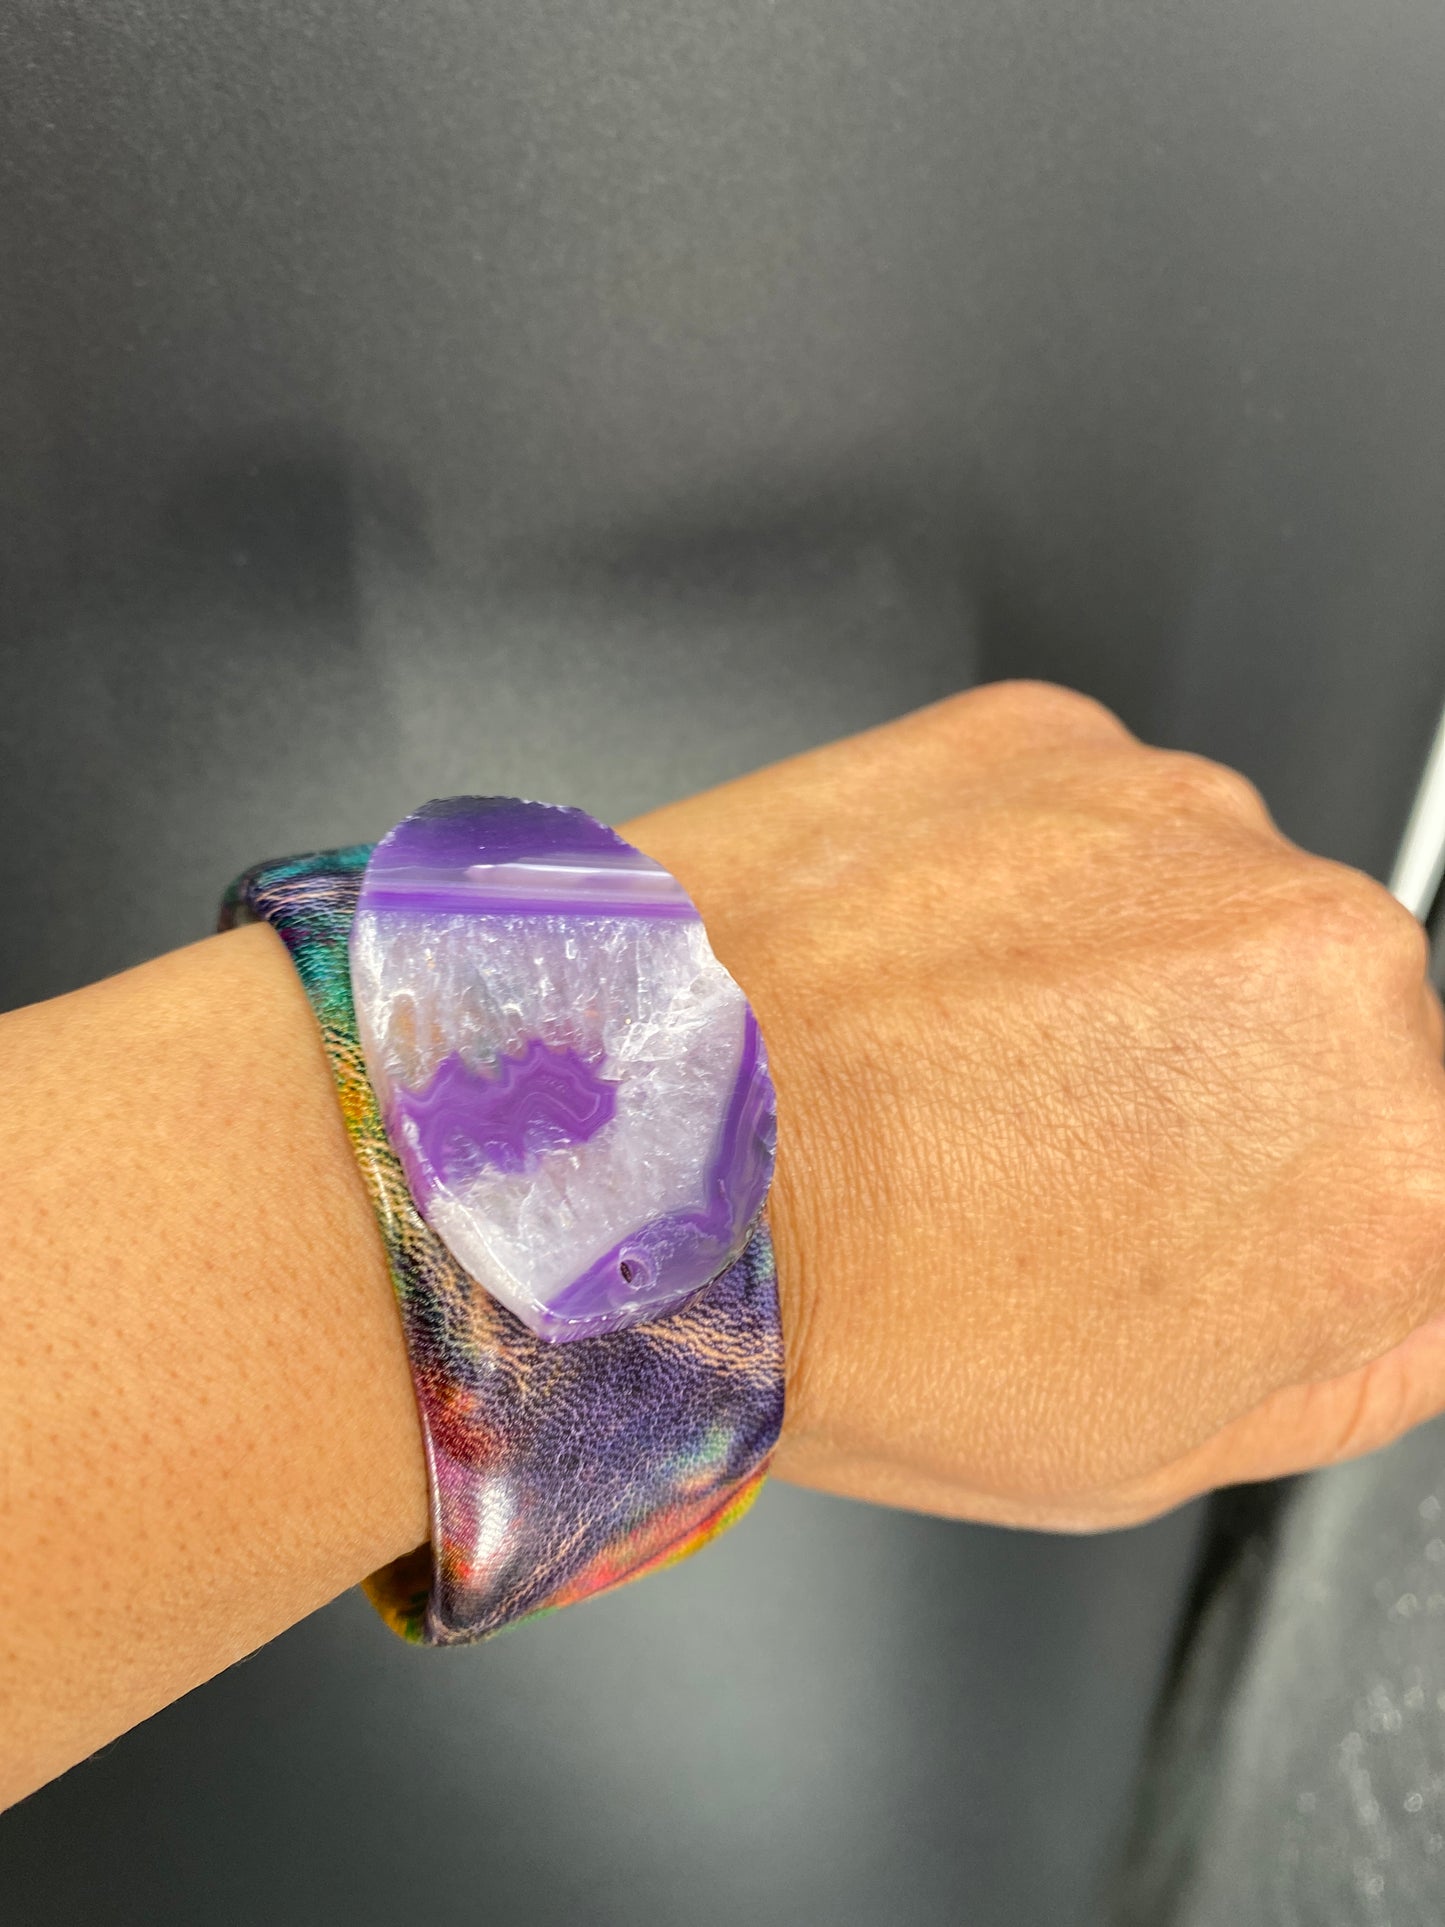 Purple passion bracelet